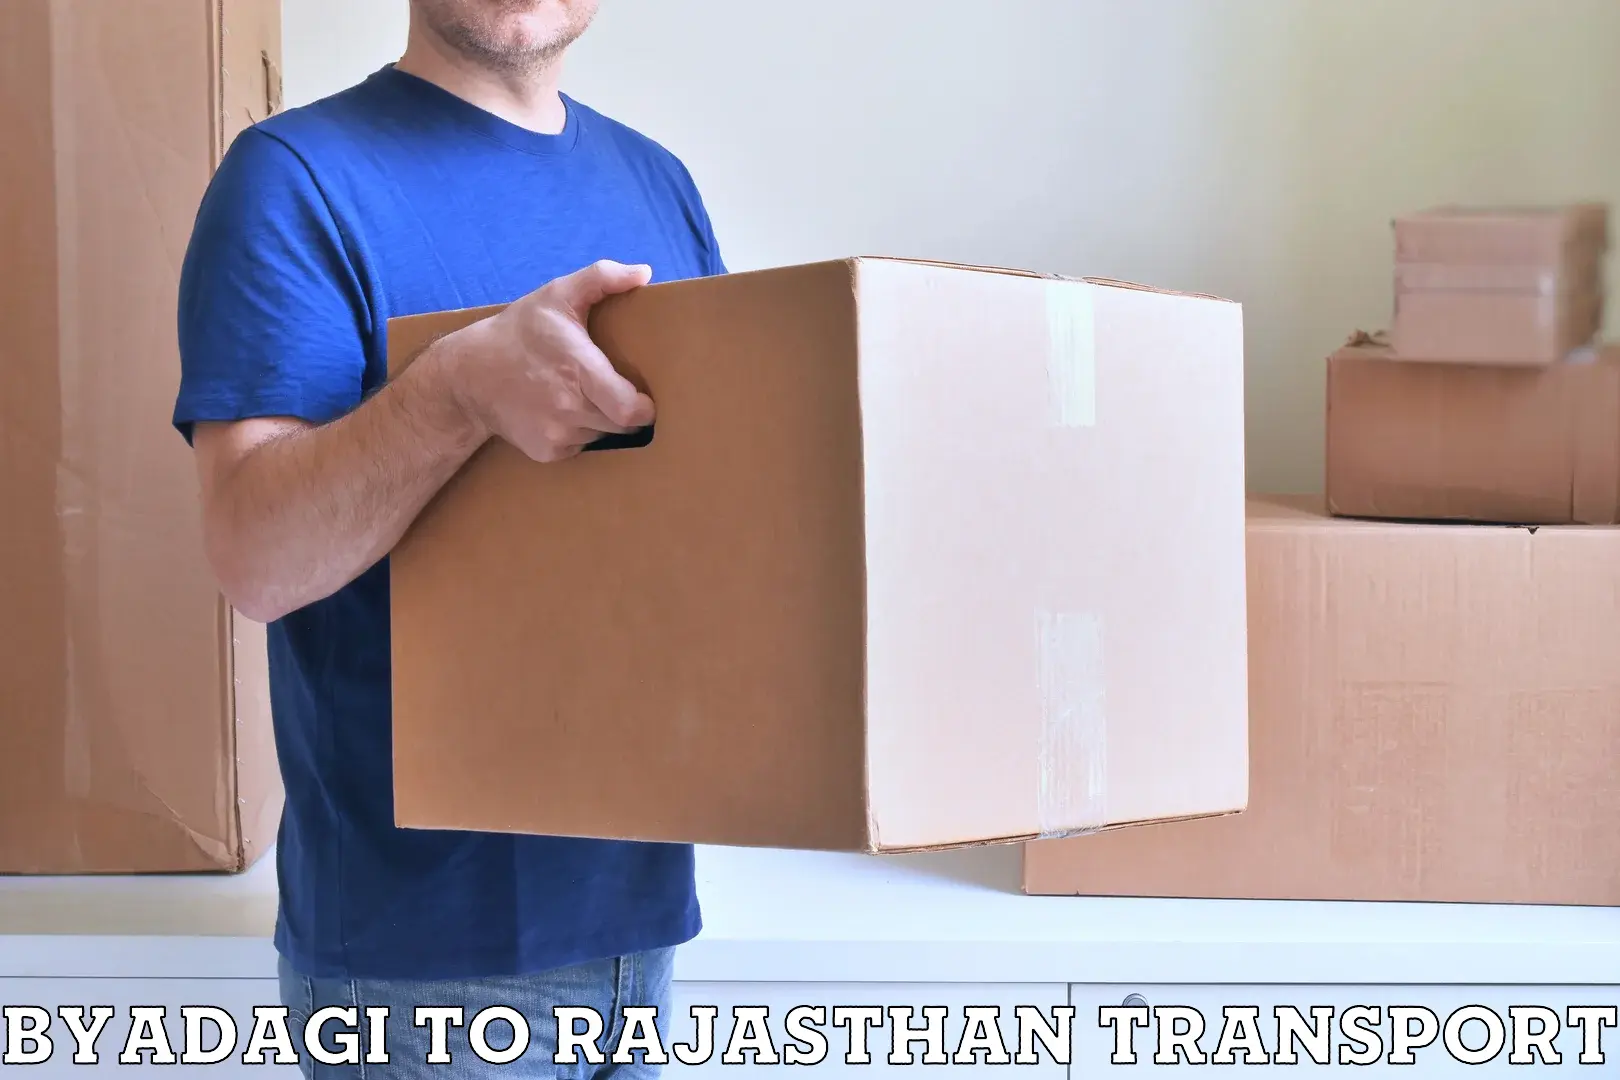 Cargo transport services Byadagi to Ramgarh Sikar